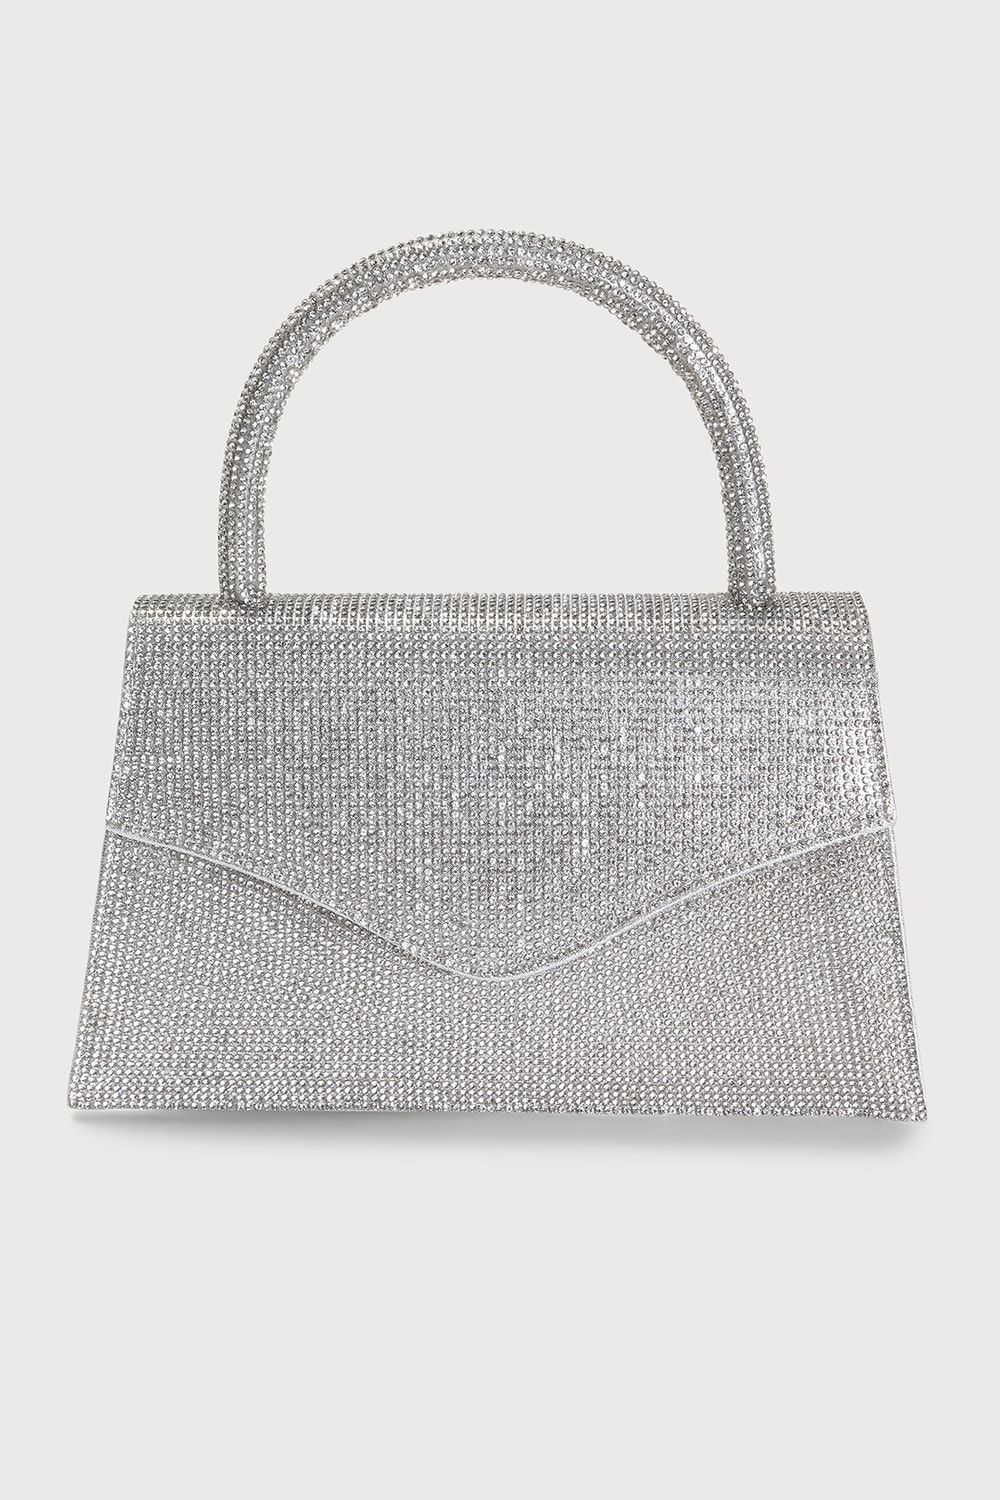 Sparkle City Silver Rhinestone Mini Handbag | Lulus (US)